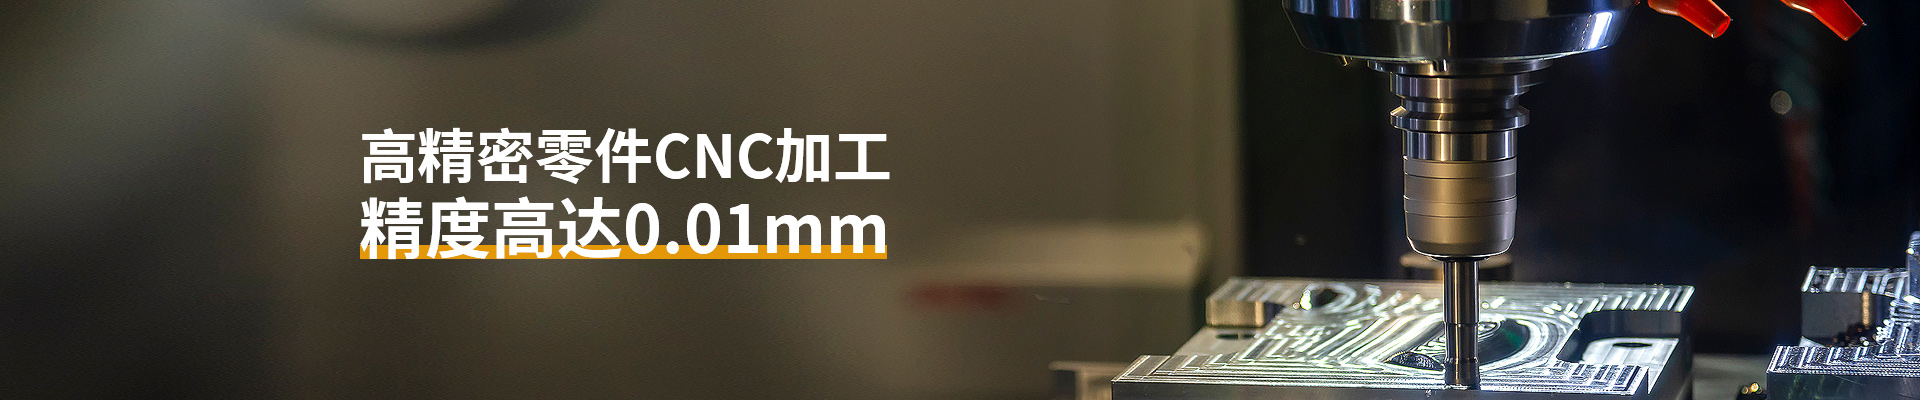 朗加精密-高精密零件CNC加工精度高达0.01mm